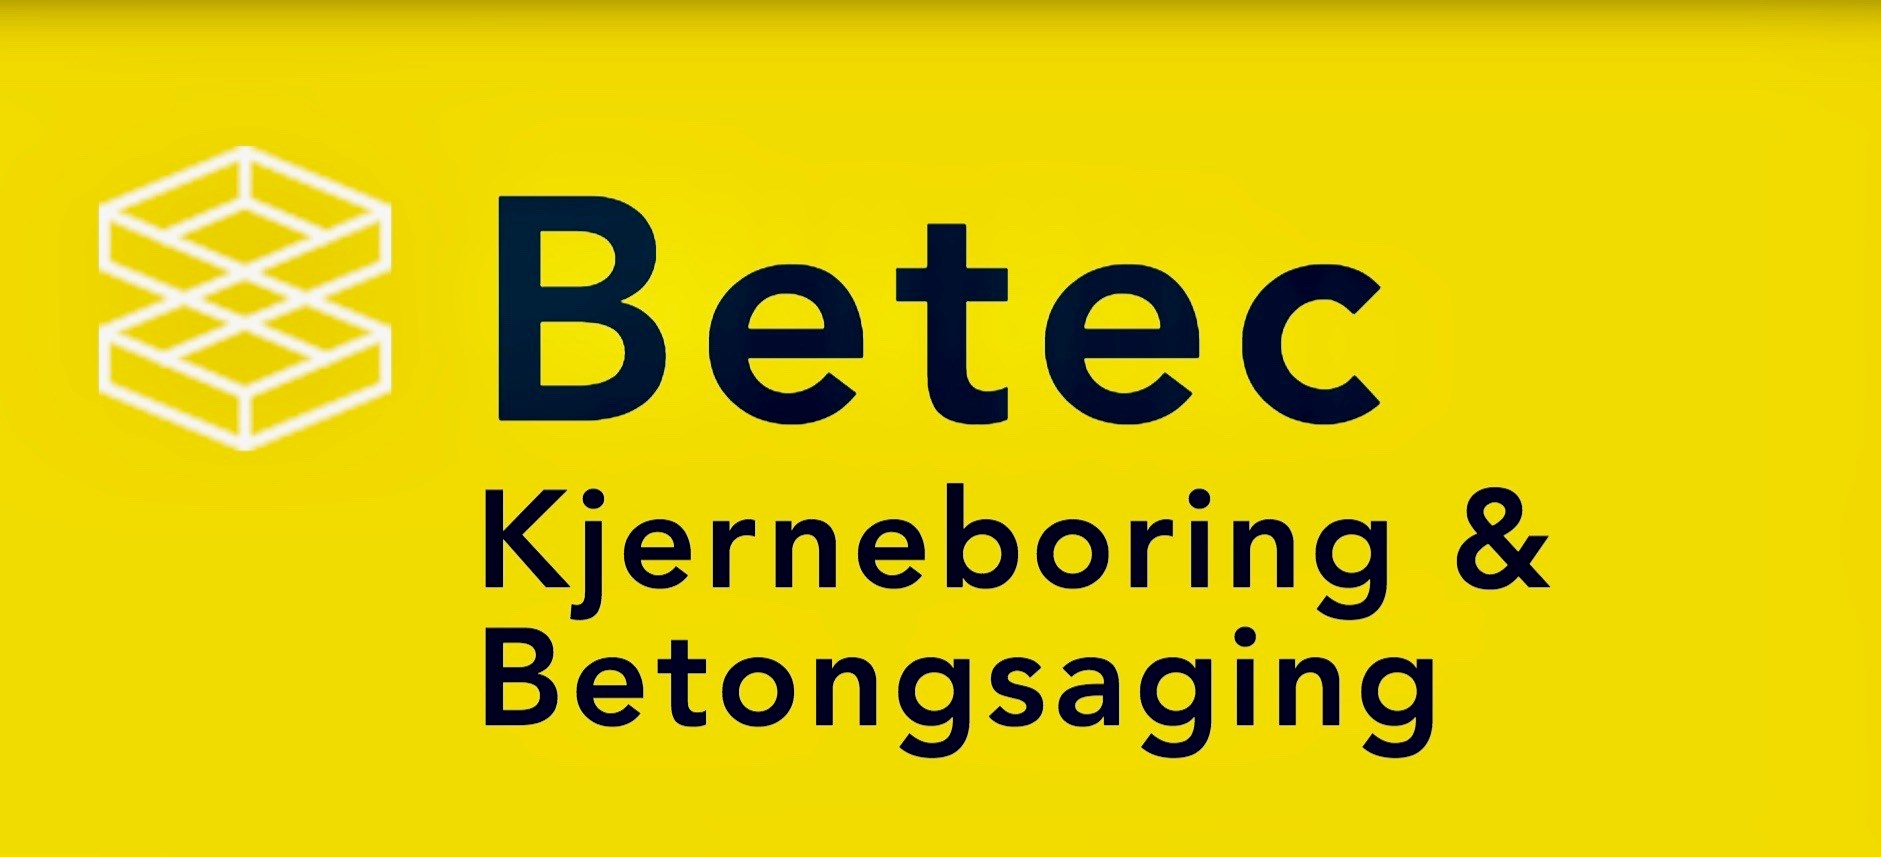 Betek Solutions - Skjermbilde 2017-12-14 kl. 16.53.00.jpg - BetekSolutions